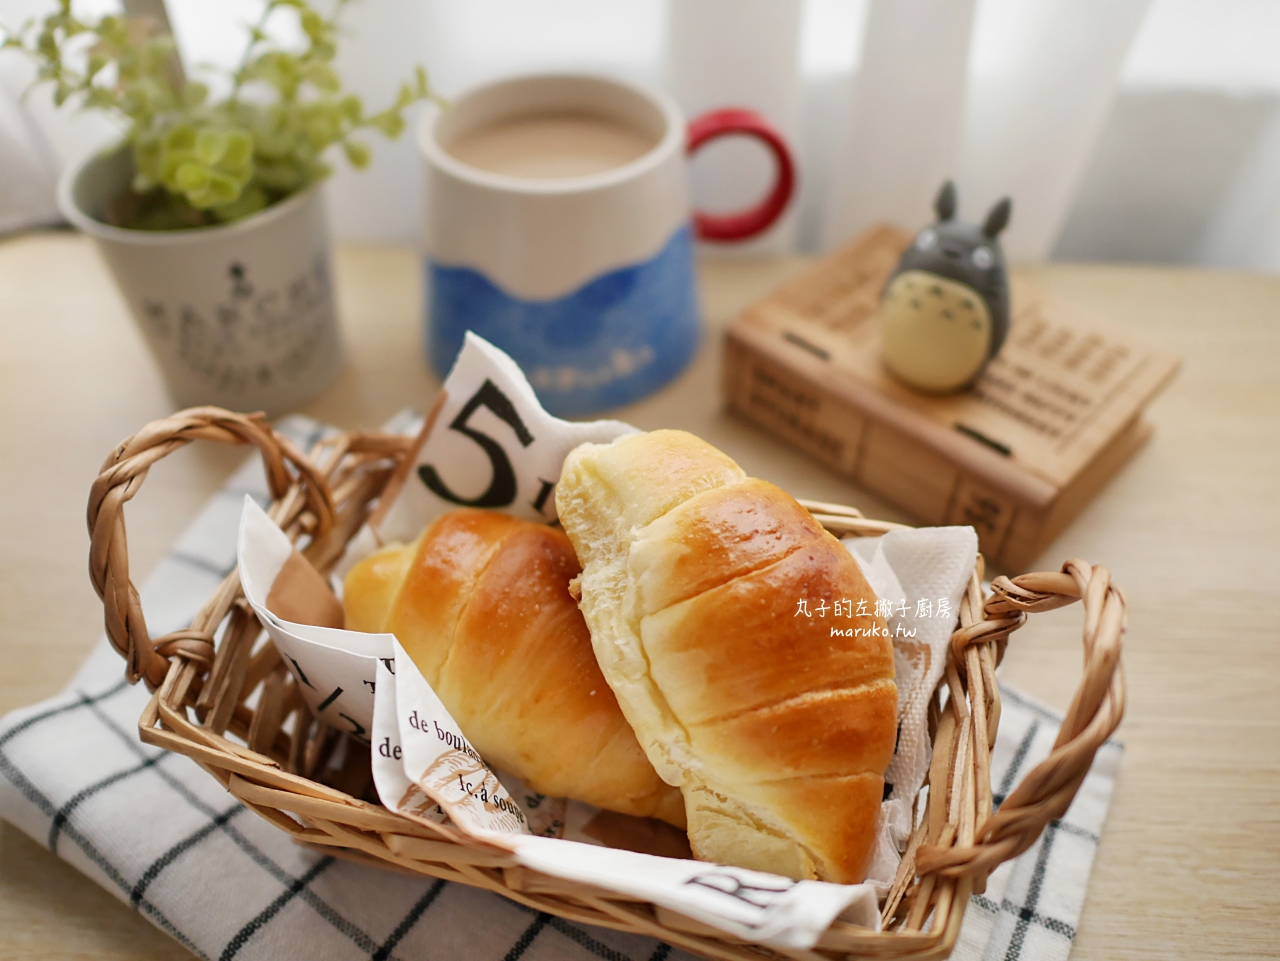 【食譜】日本 Twinbird 多功能製麵包機推薦 基本麵團脆皮奶油捲麵包實作分享